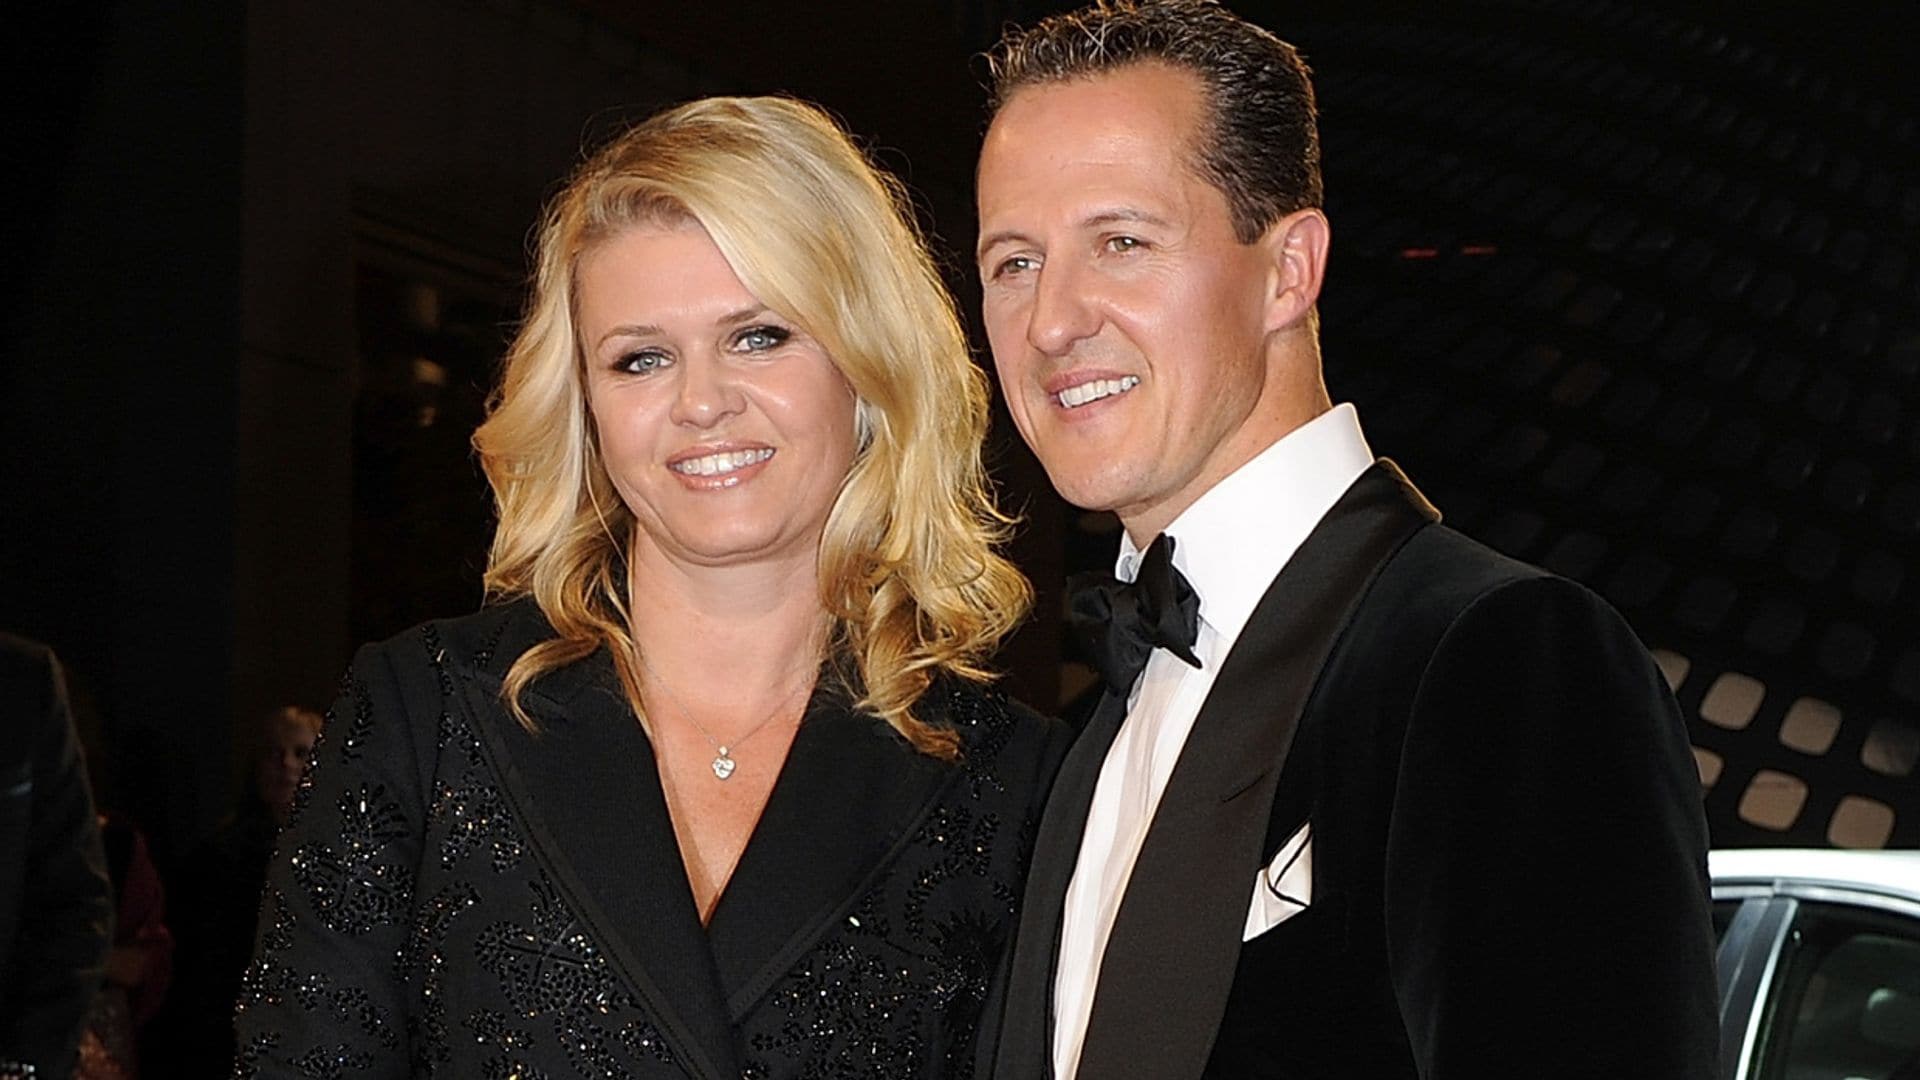 Michael Schumacher y su familia, ¿nueva vida en España?